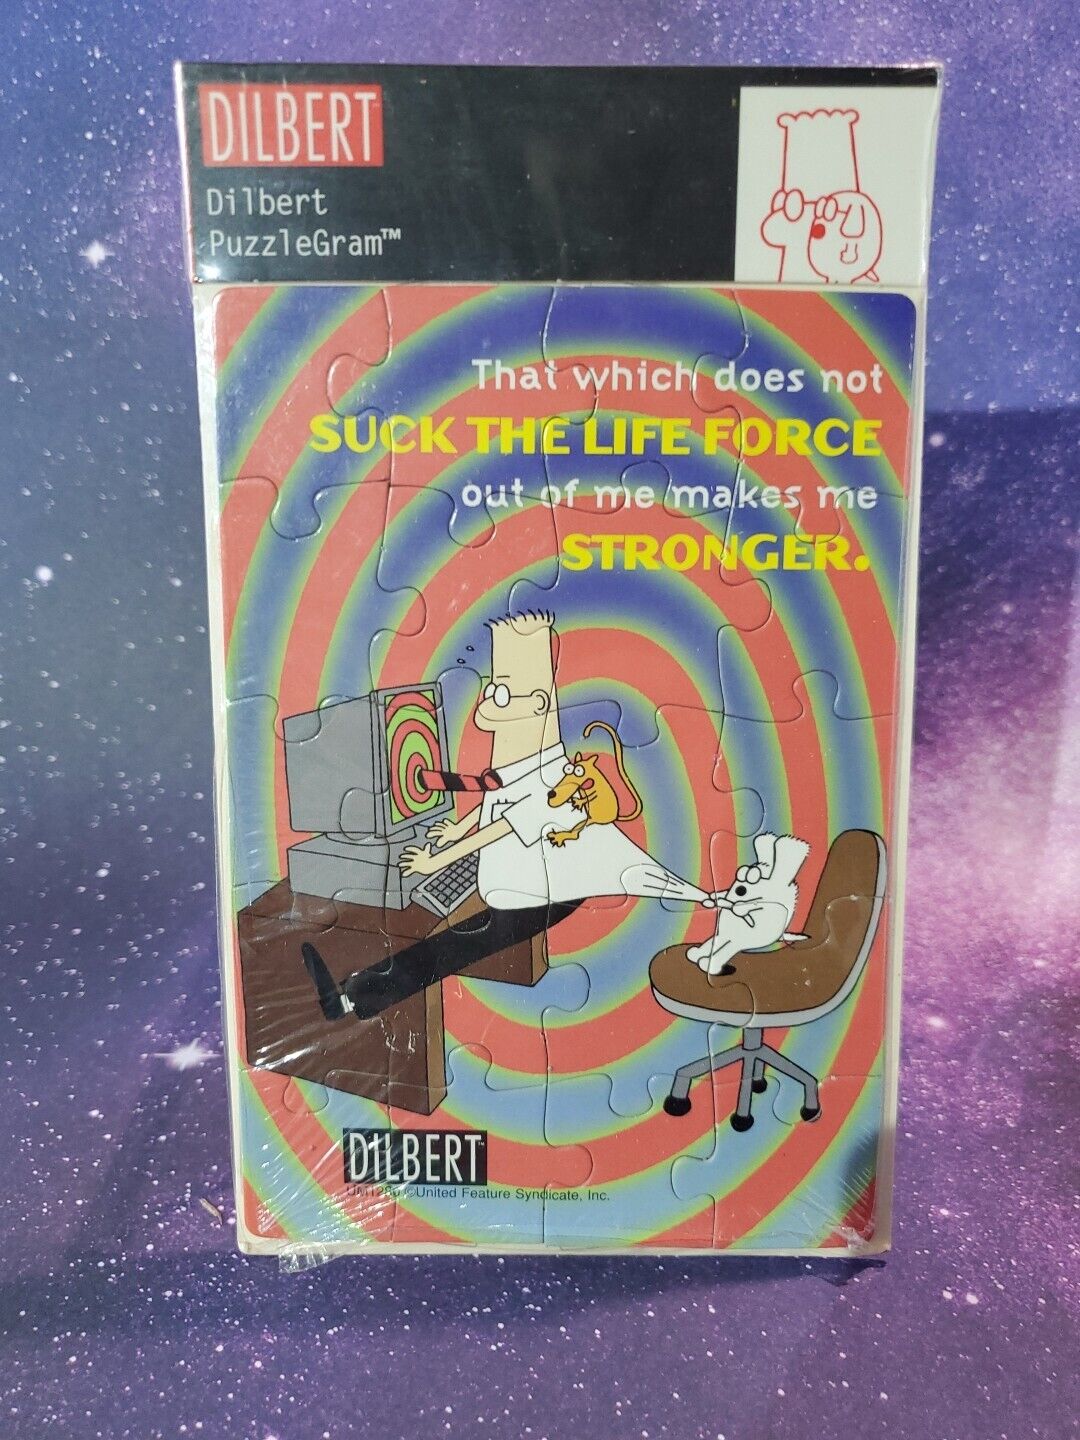 VTG Dilbert Postcard Puzzle Jig Hellos Puzzle Gram NOS - Suck The Life Force UFS